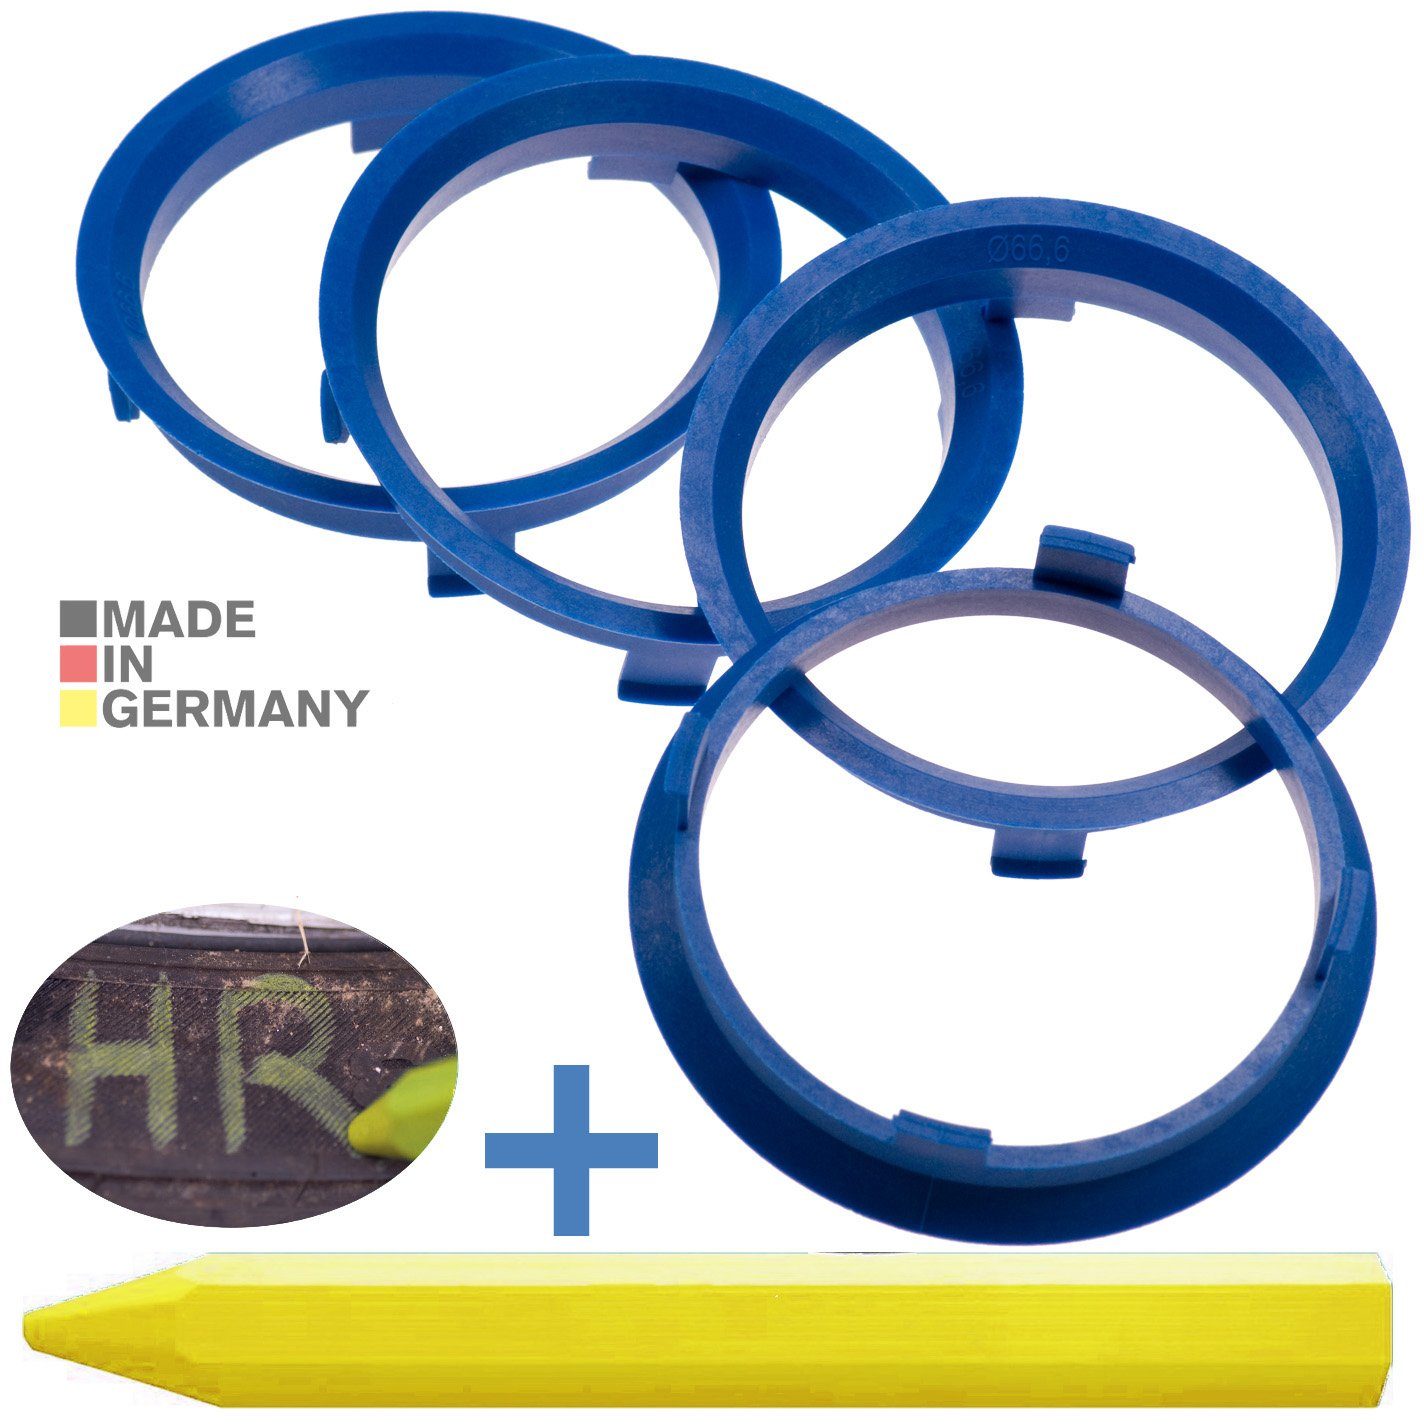 RKC Reifenstift 4X Zentrierringe Blau Felgen Ringe + 1x Reifen Kreide Fett Stift, Maße: 71,6 x 66,6 mm